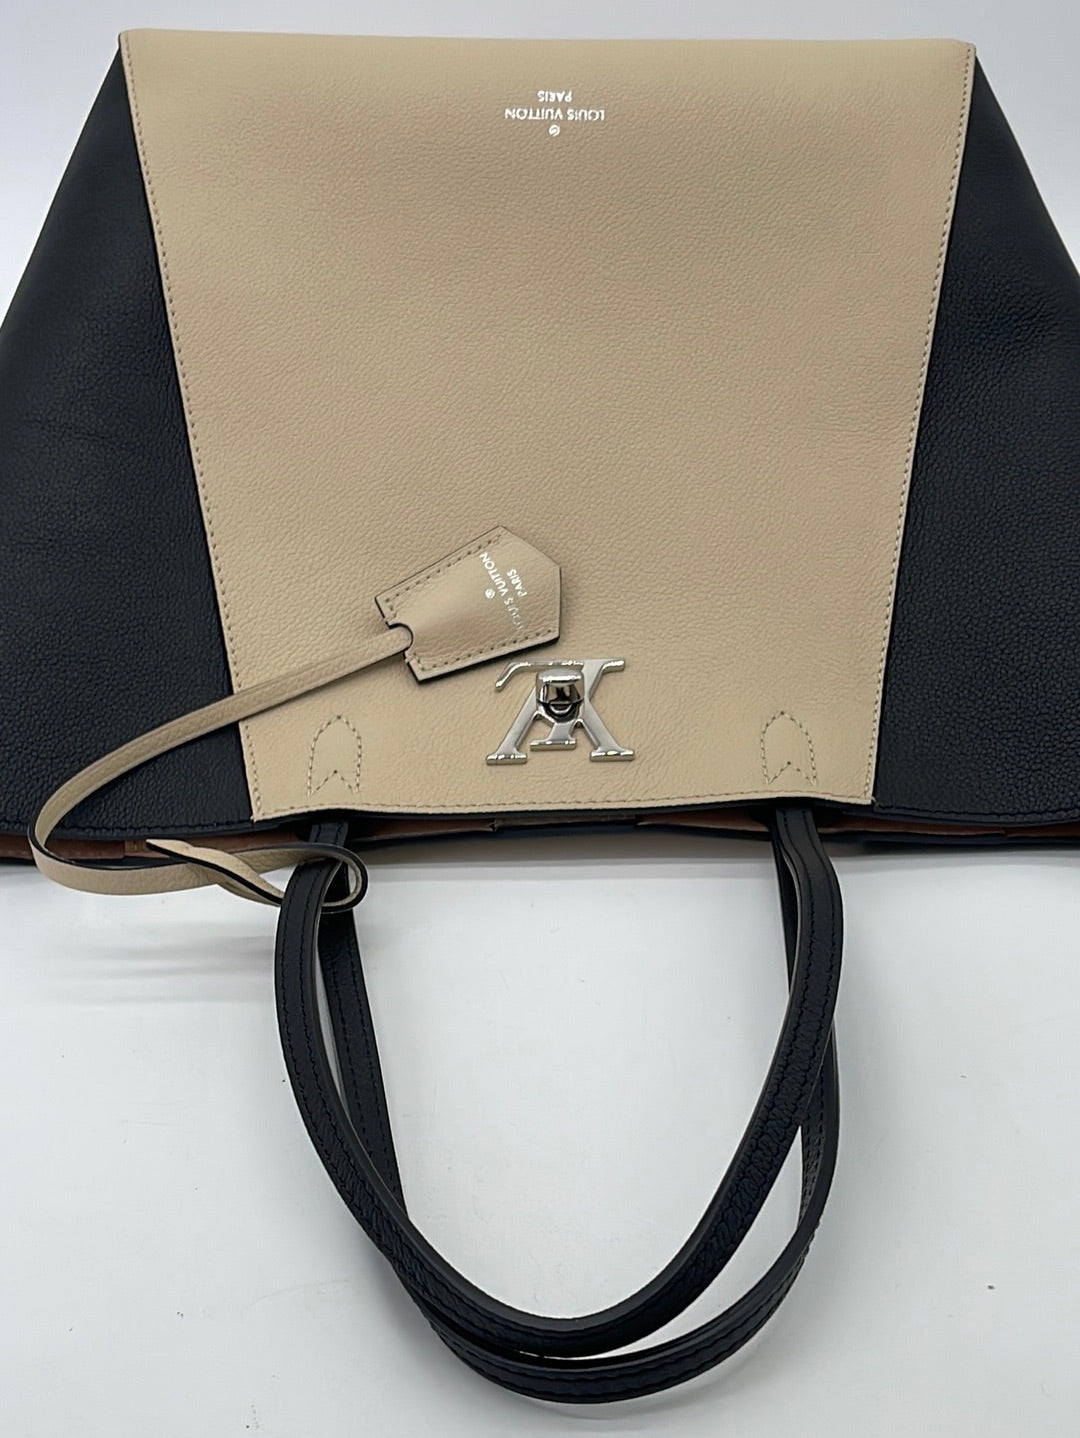 Louis Vuitton, Bags, Authentic Louis Vuitton Lockme Cabas Bag